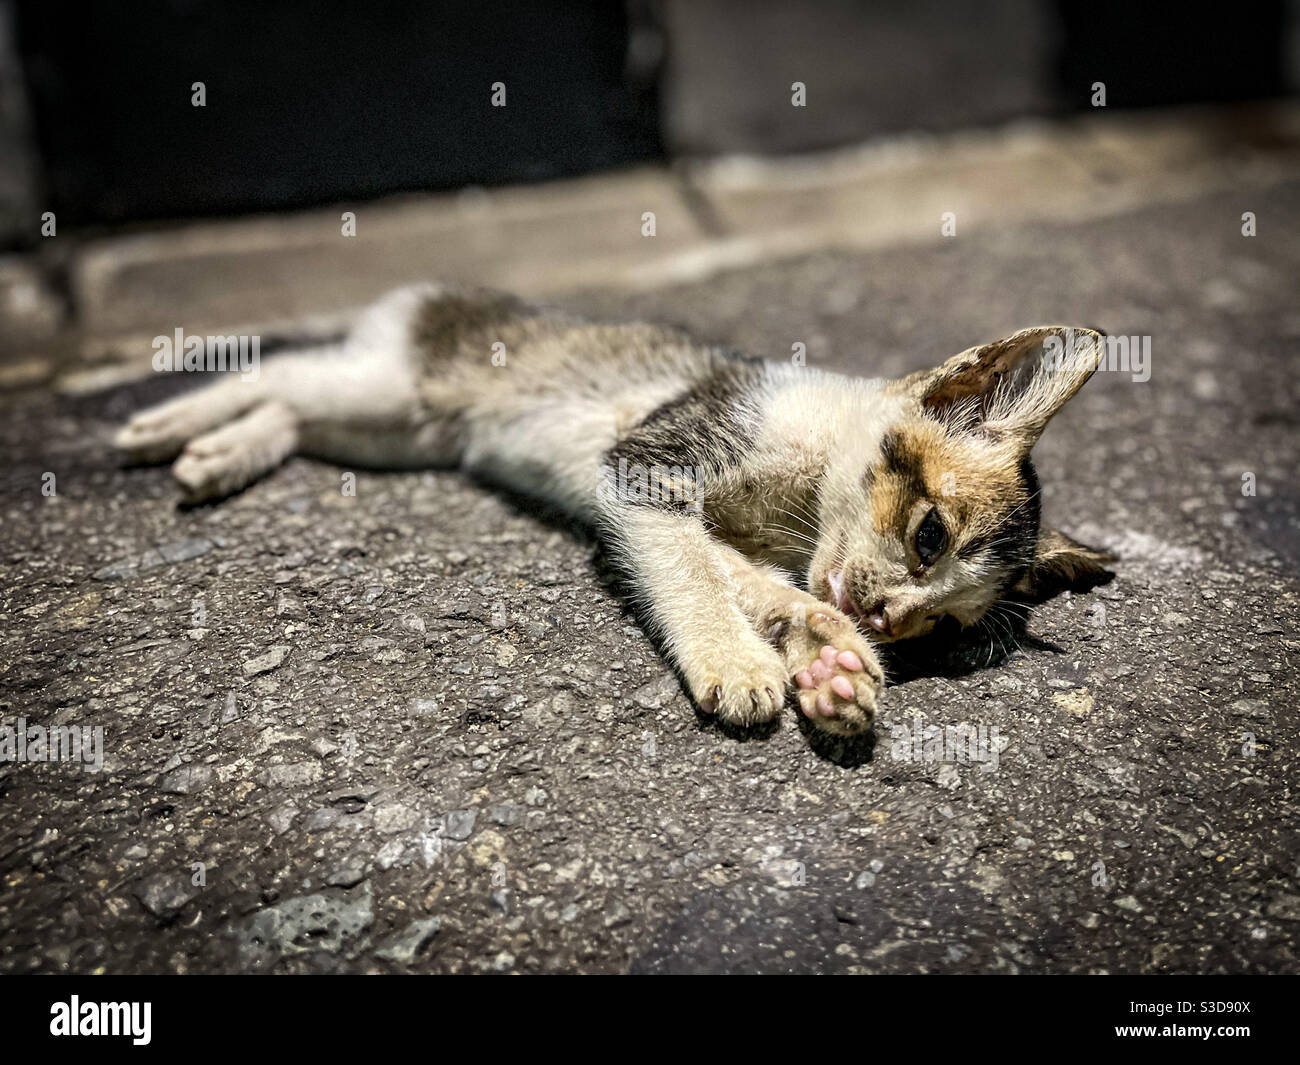 Giacarta può essere un posto difficile per sopravvivere. Come questo povero gattino scoperto, passando via sul lato della strada. Foto Stock